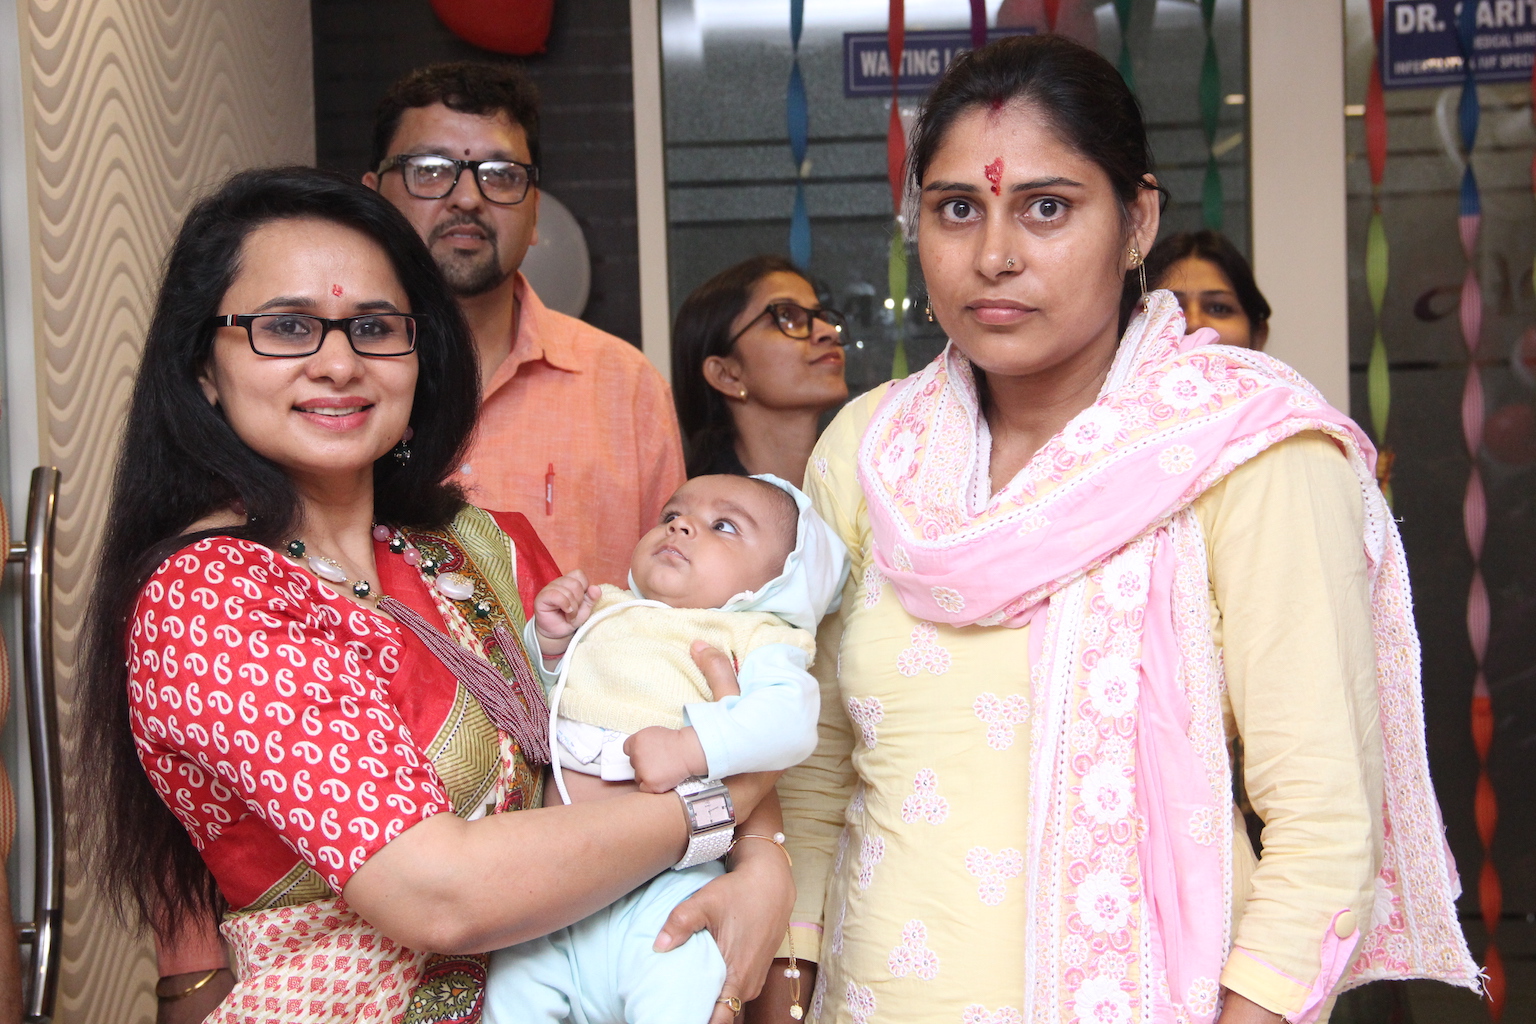 Best Infertility Clinic in Noida, Test Tube Baby Center in Noida, Infertility Treatment in Noida, IVF Centre in Noida, Fertility Centre in Noida, IVF Doctor in Noida, IVF Fertility Centre in Noida